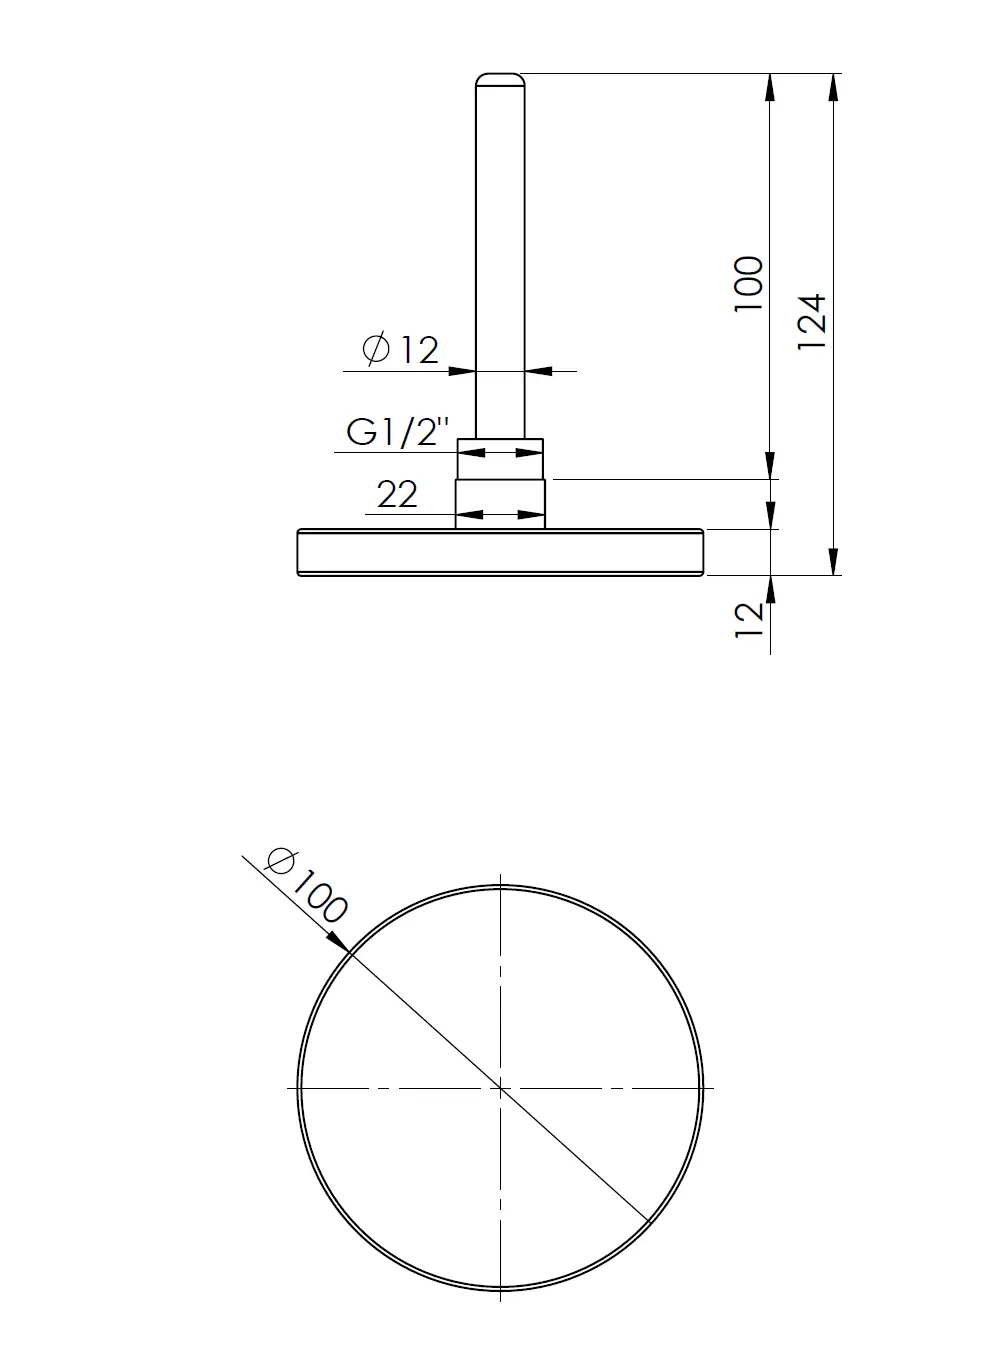 Termometr bimetaliczny BiTh 100, fi100 mm, 0÷160°C, L 100 mm, G1/2", ax, kl. 2 - budowa